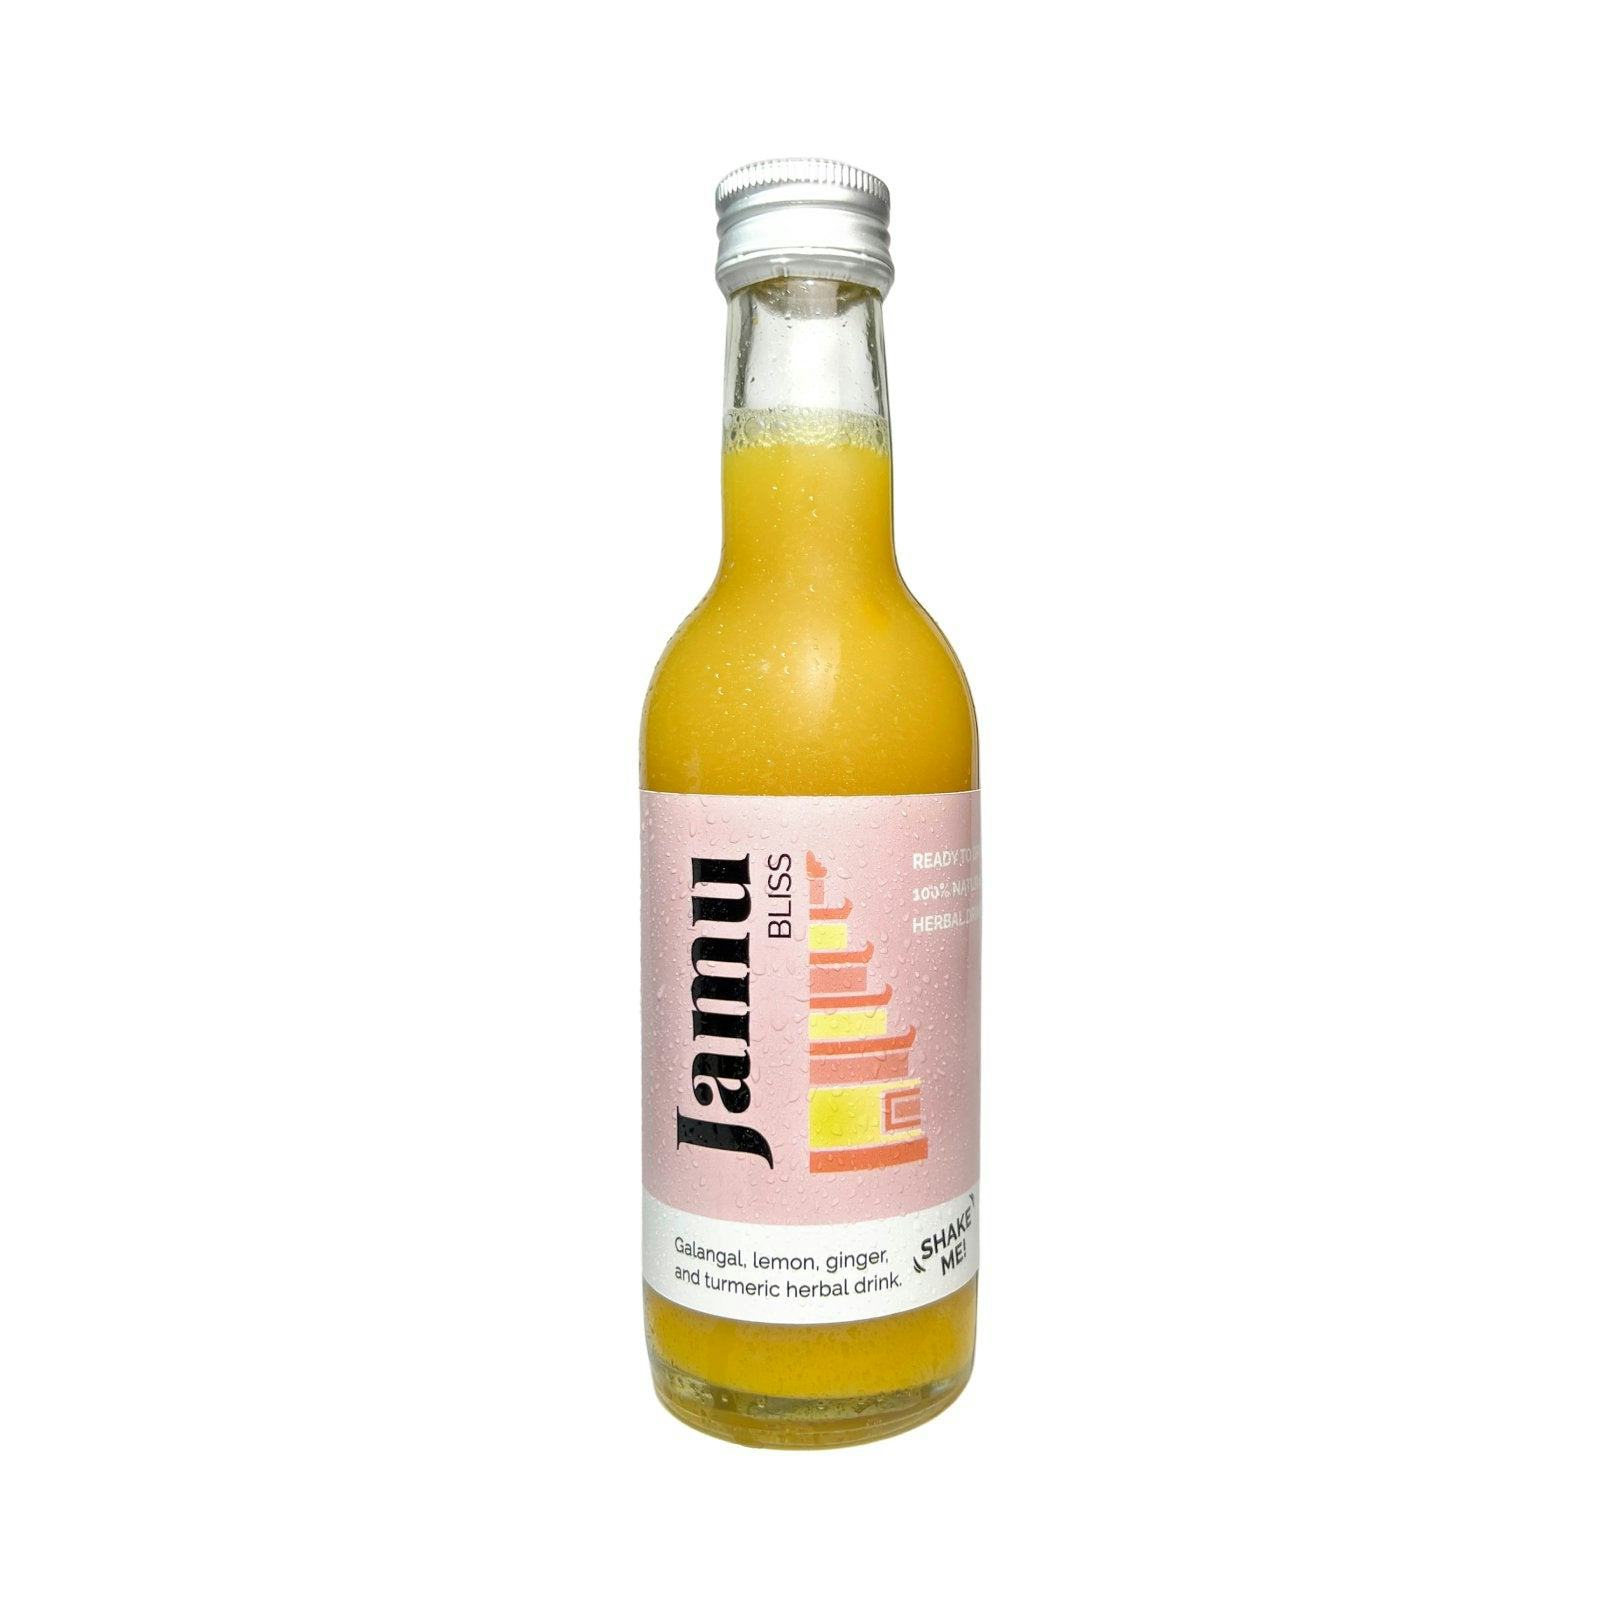 Jamu Bliss, Galangal drink, handwerkliches Produkt für den Direktverkauf in der Schweiz